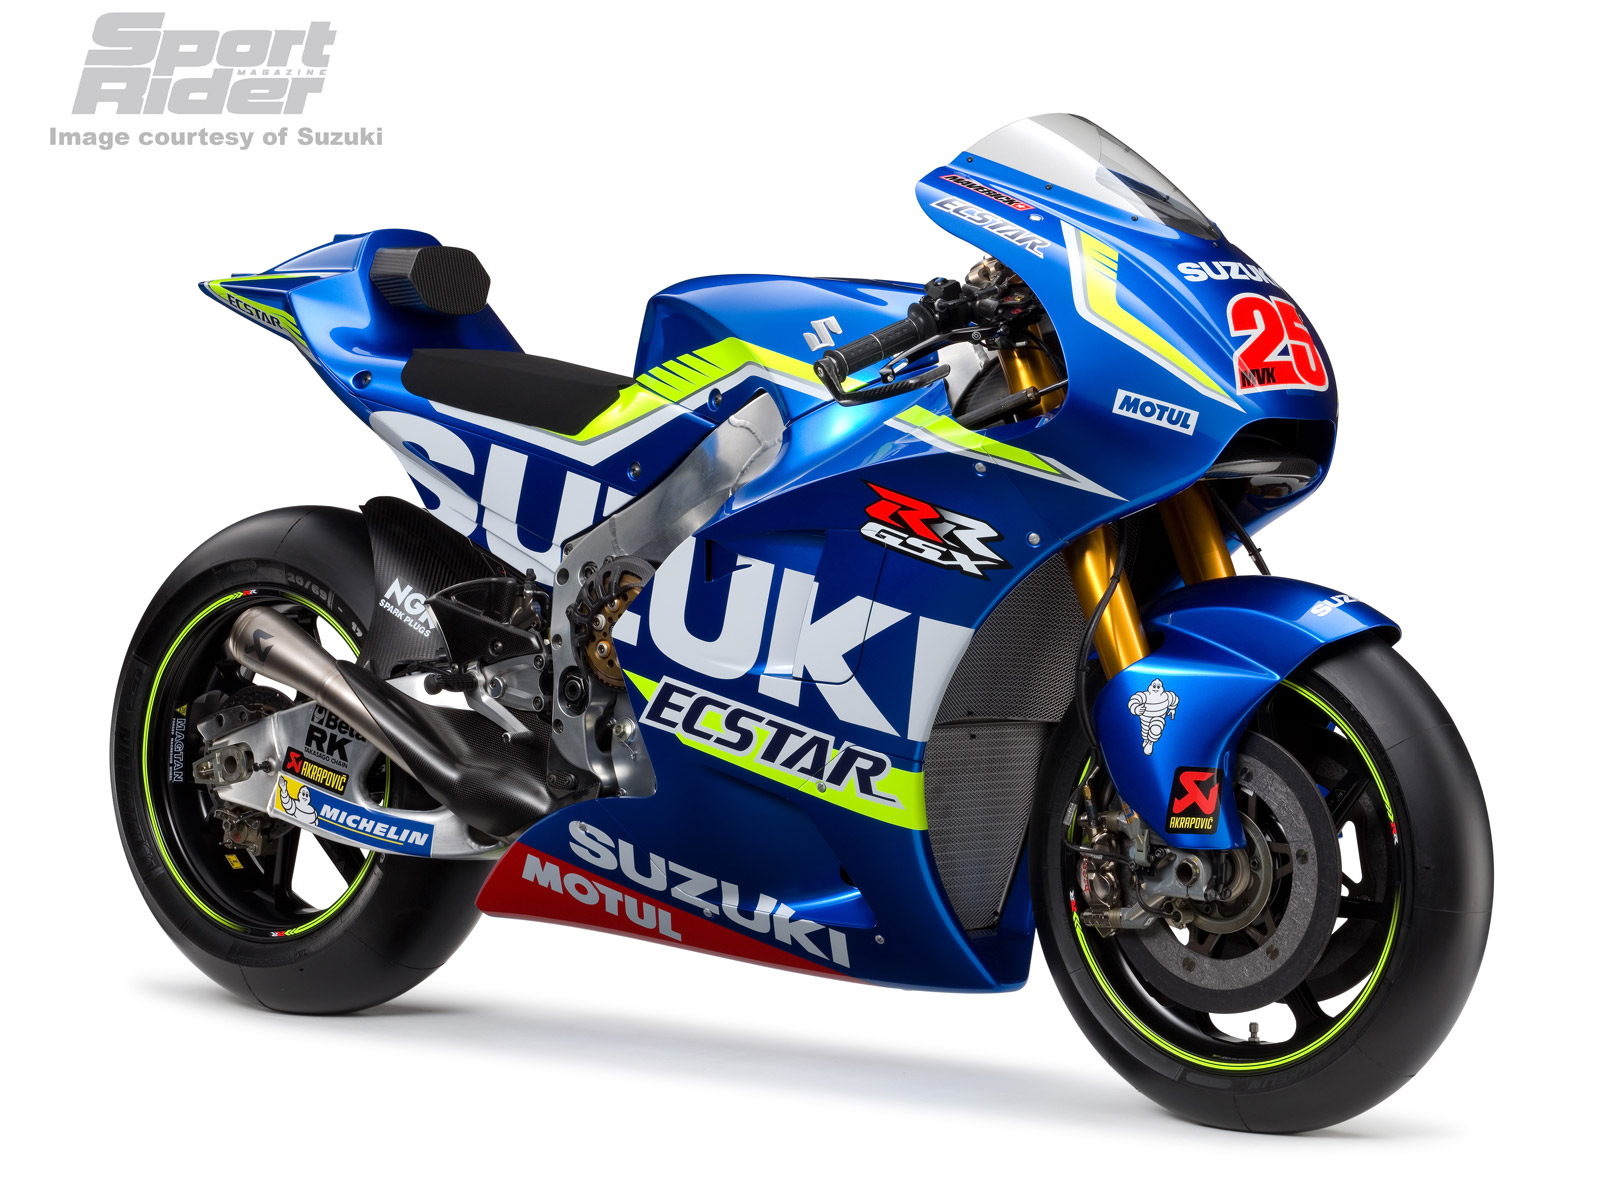 Gallery: The 2016 Suzuki GSX RR MotoGP Bike